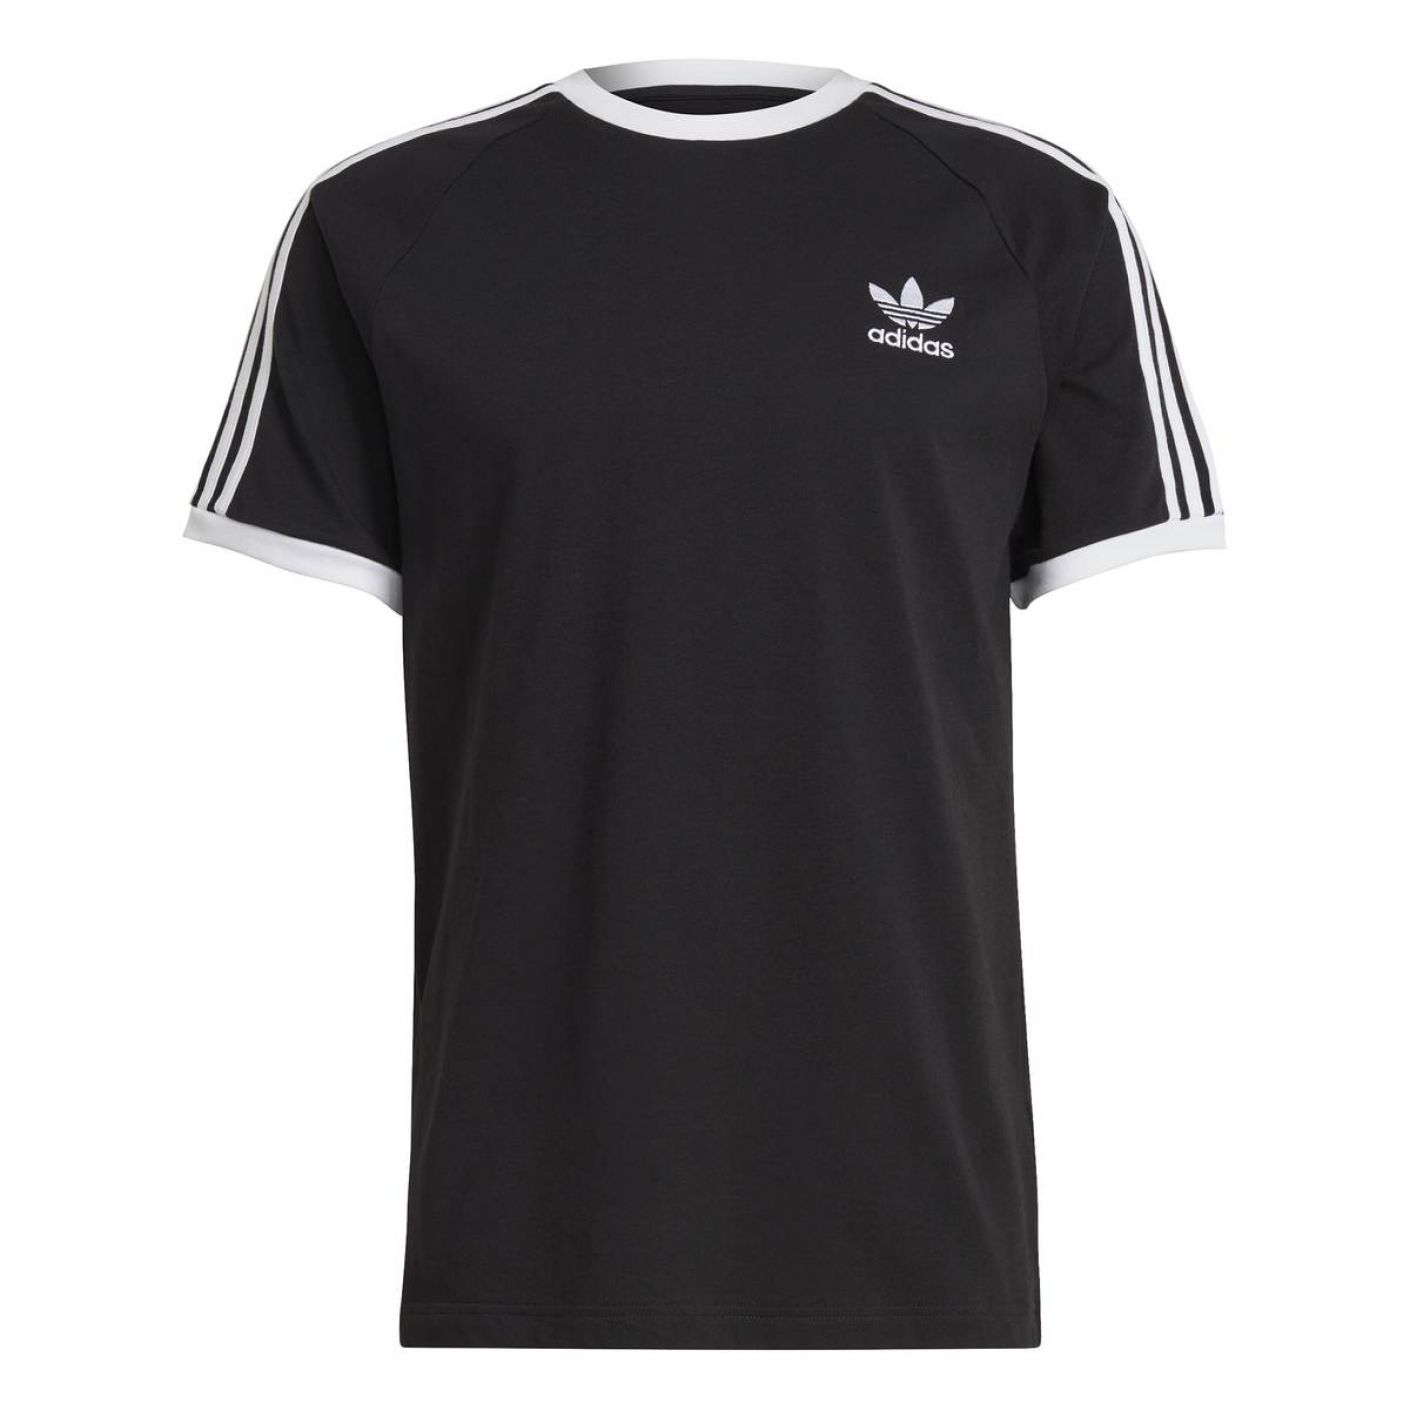 Adidas T-shirt 3-Stripes Black-White